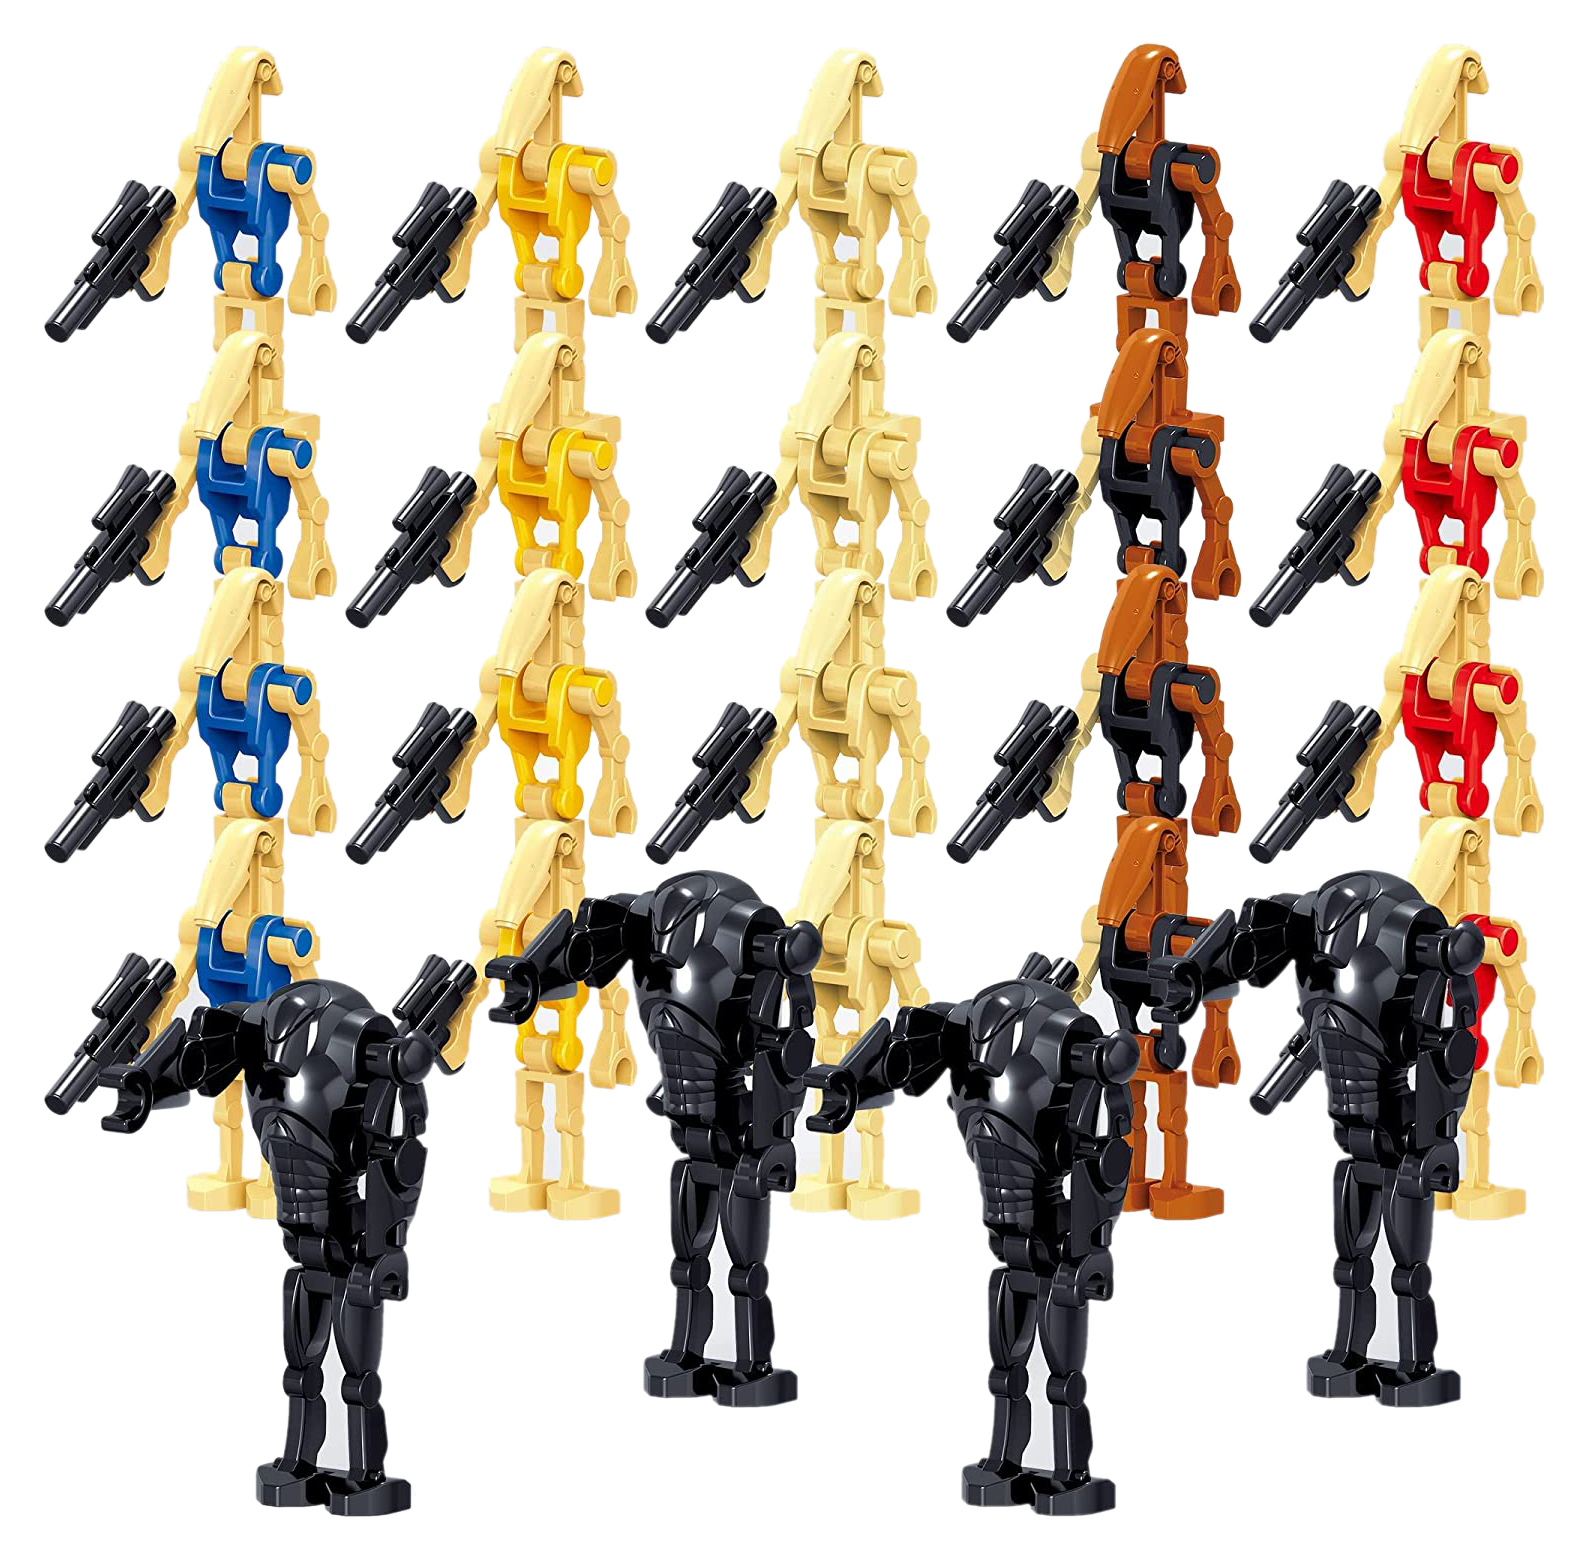 Sttar Wars Combat Battle droids with Weapons Set 24 Minifigure Building Blocks